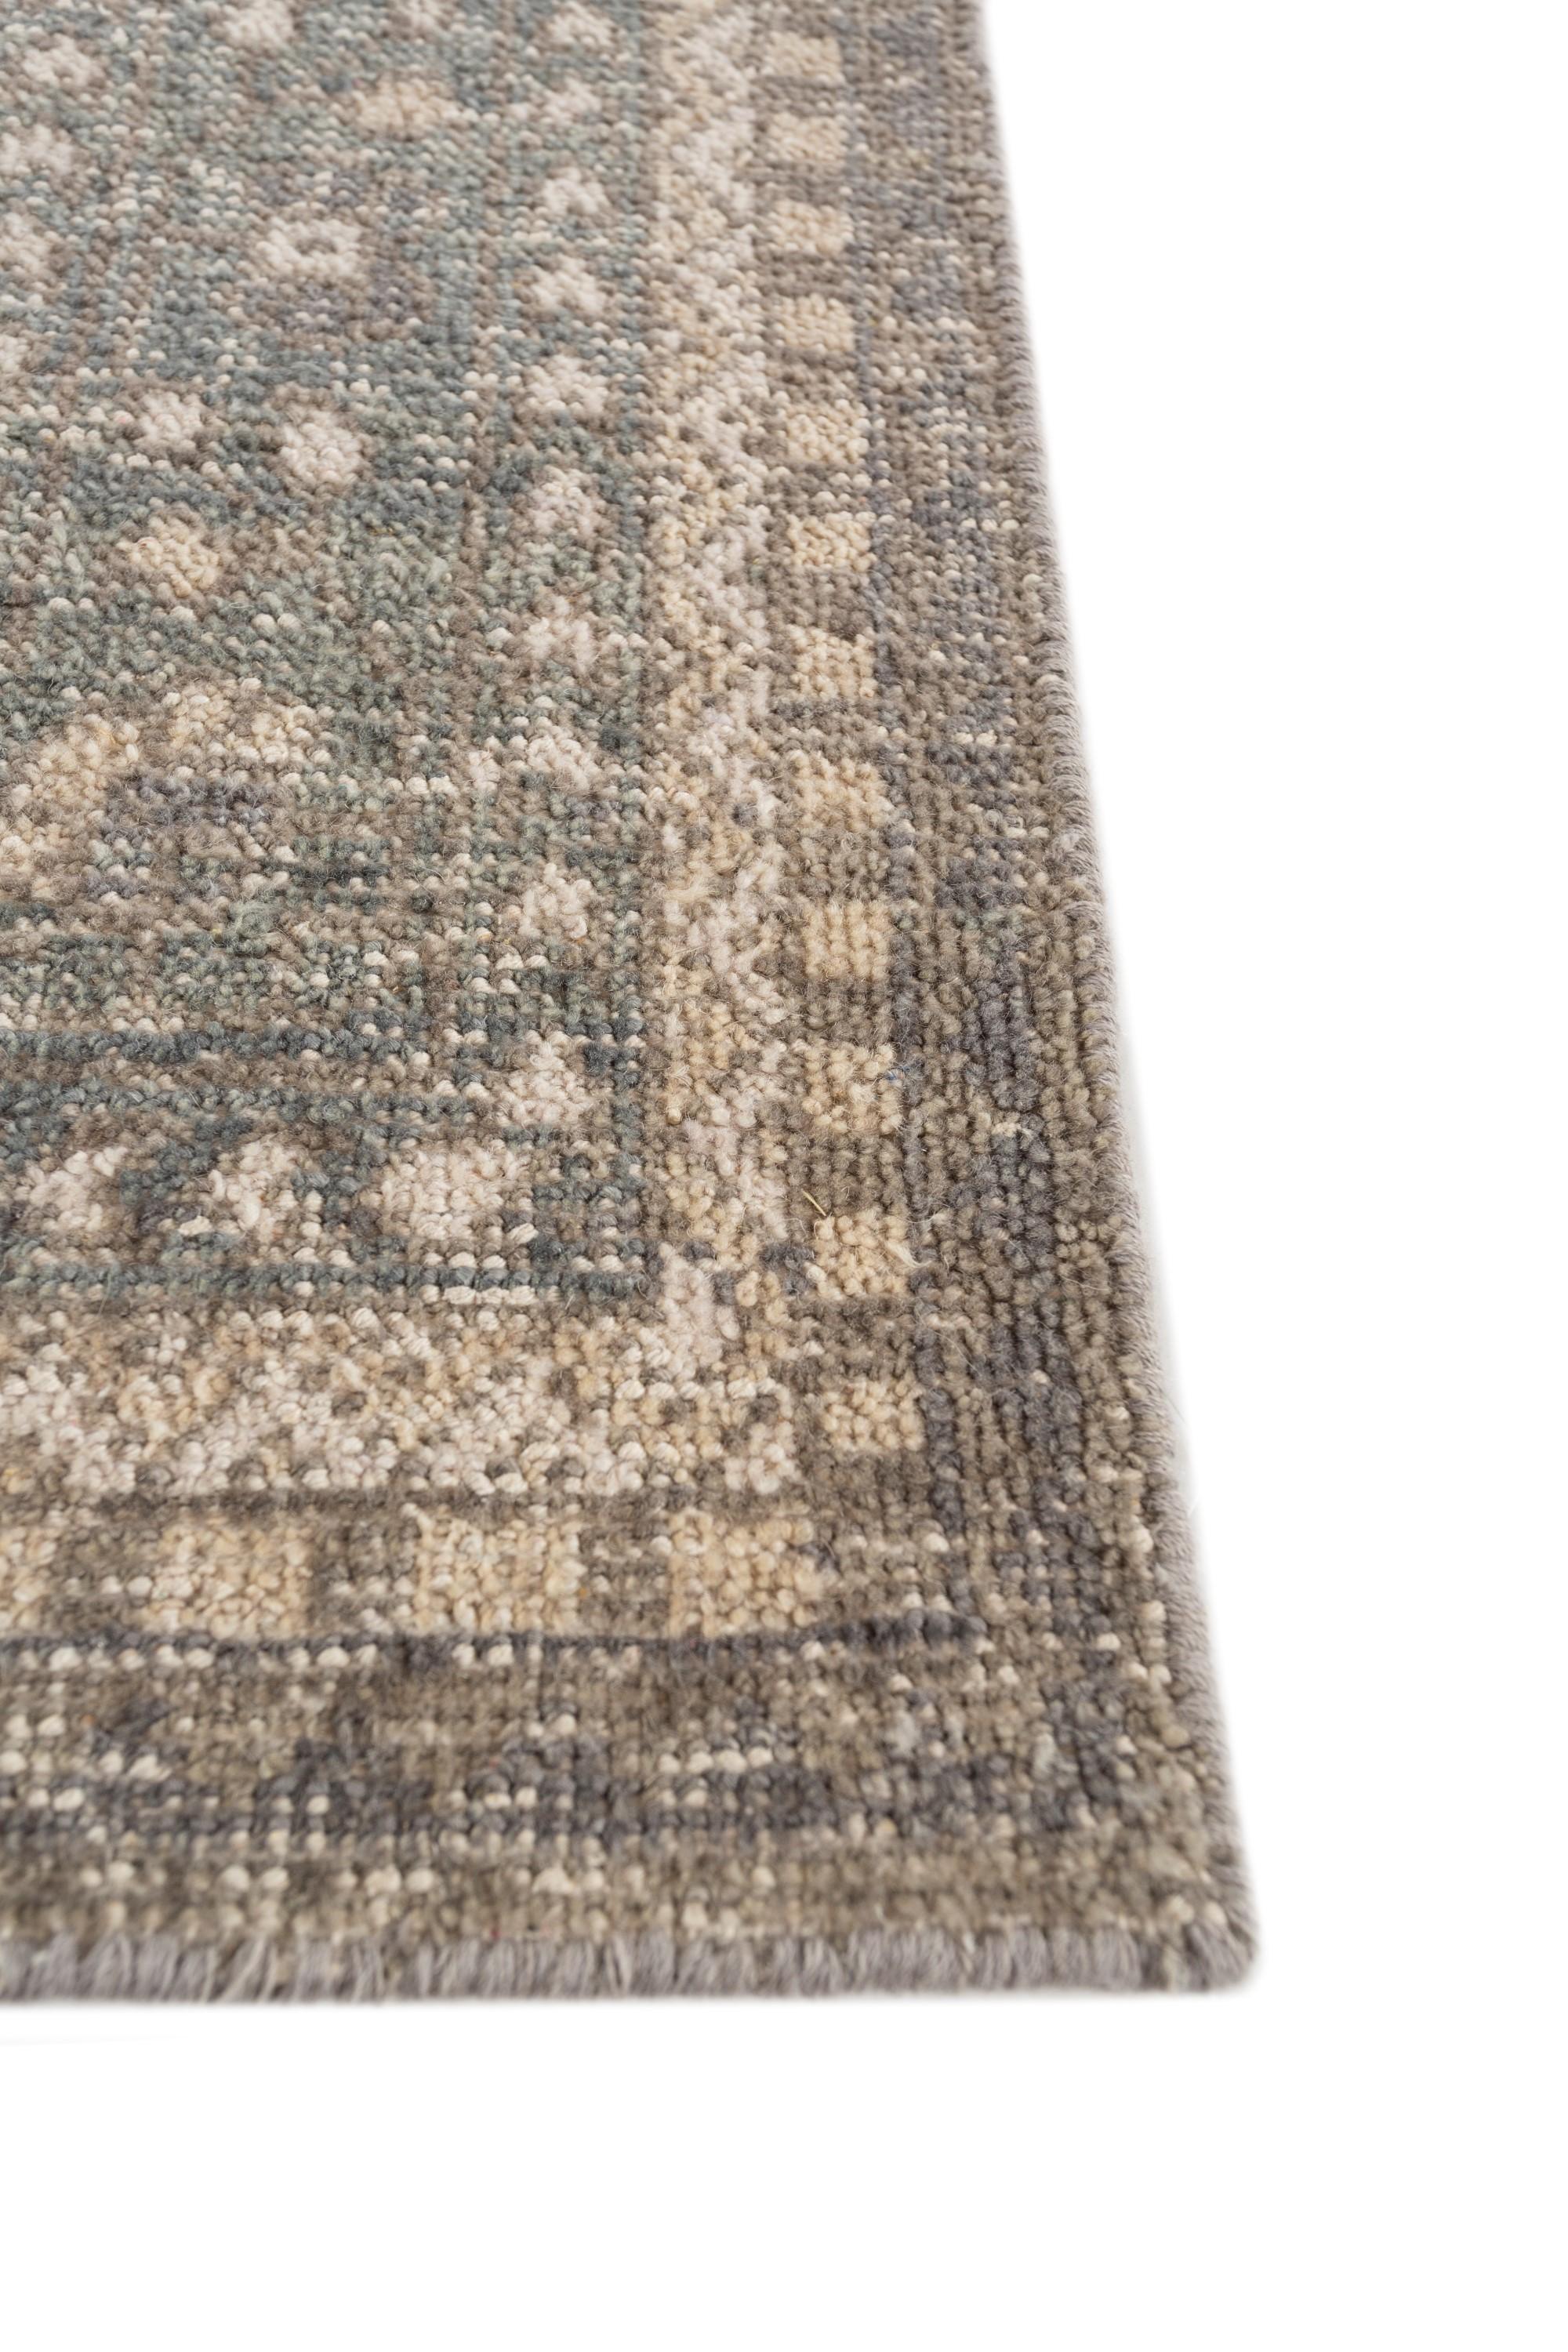 Voici le tapis noué à la main, un chef-d'œuvre fabriqué à partir de laine exquise. Le tapis présente un design captivant avec une couleur de fond ardoise anthracite et une bordure gris moyen sophistiquée. Méticuleusement nouée par des artisans